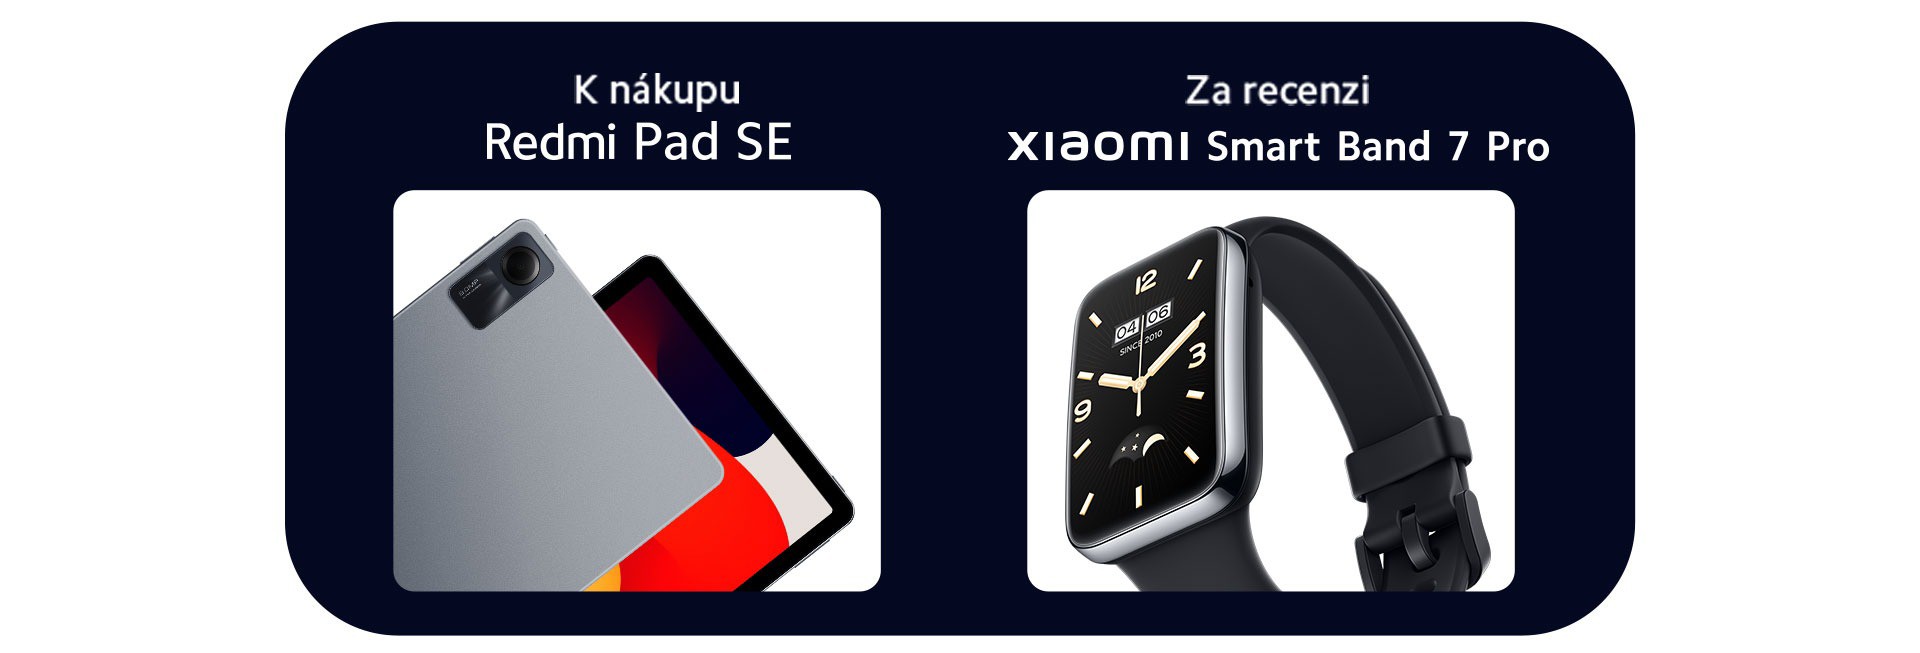 K nákupu Xiaomi 13T (Pro) získáš skvělé dárky Redmi Pad SE a Xiaomi Smart Band 7 Pro